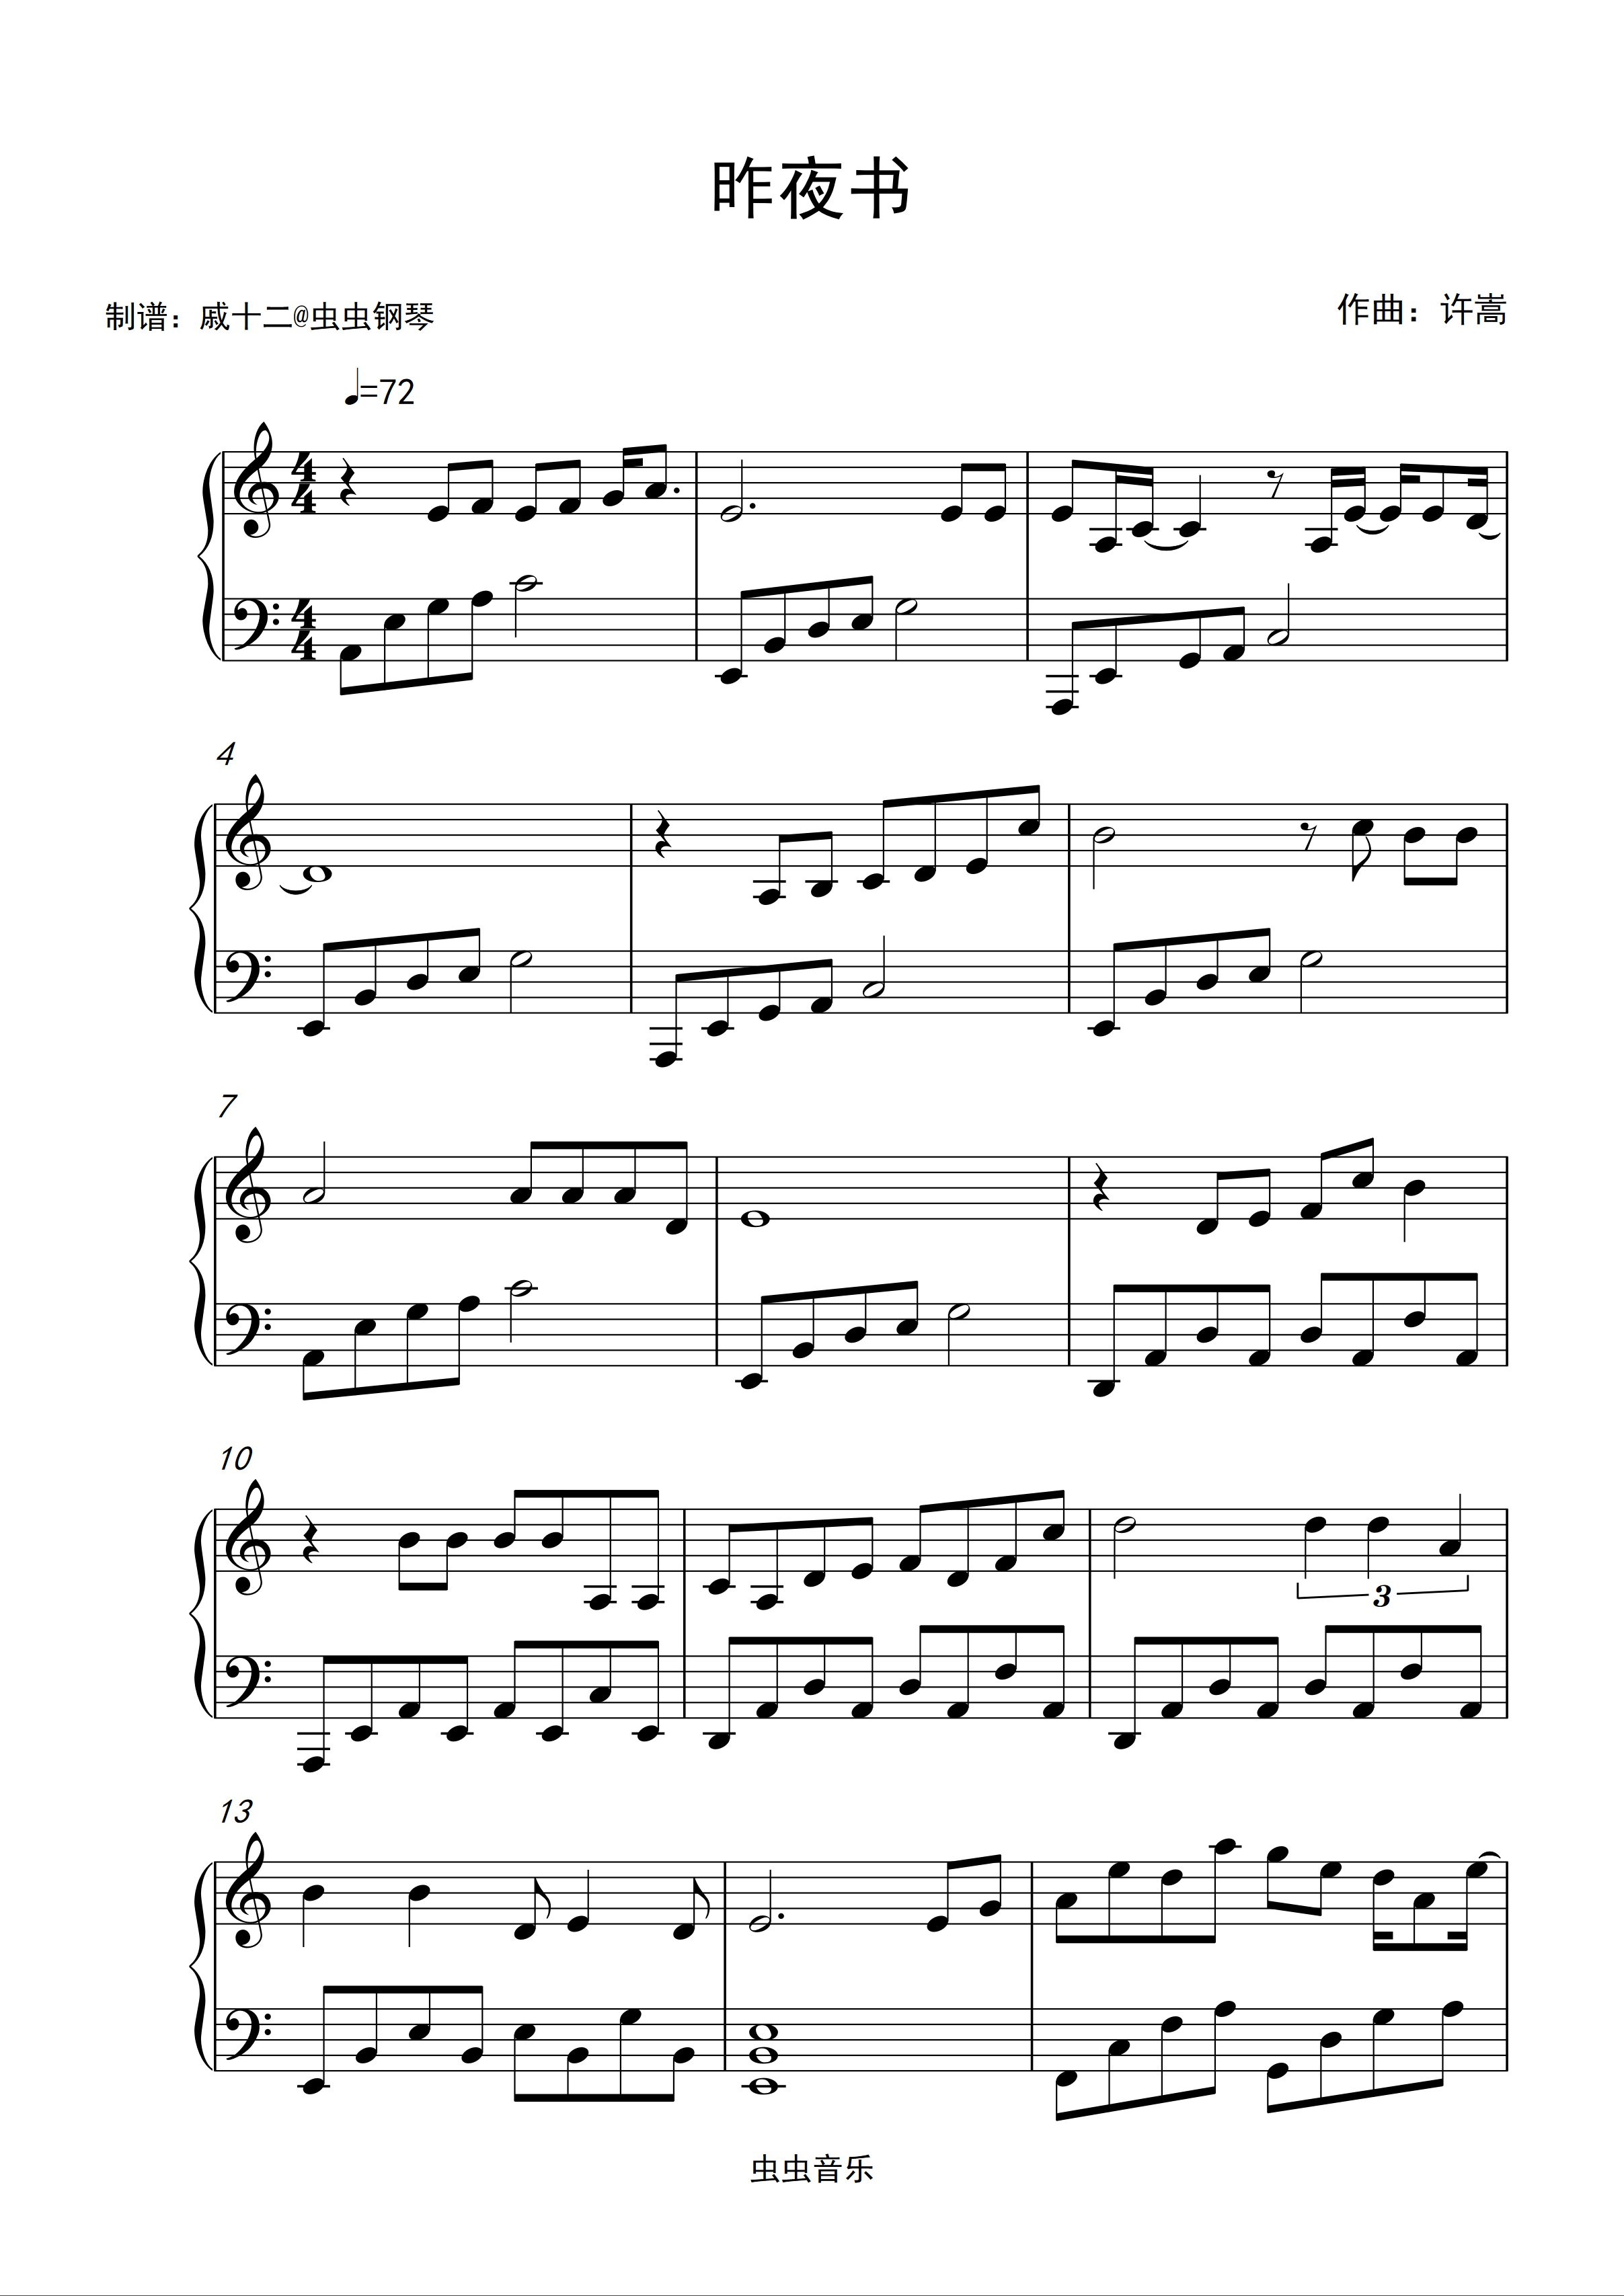 昨夜书-完美版五线谱预览5-钢琴谱文件（五线谱、双手简谱、数字谱、Midi、PDF）免费下载